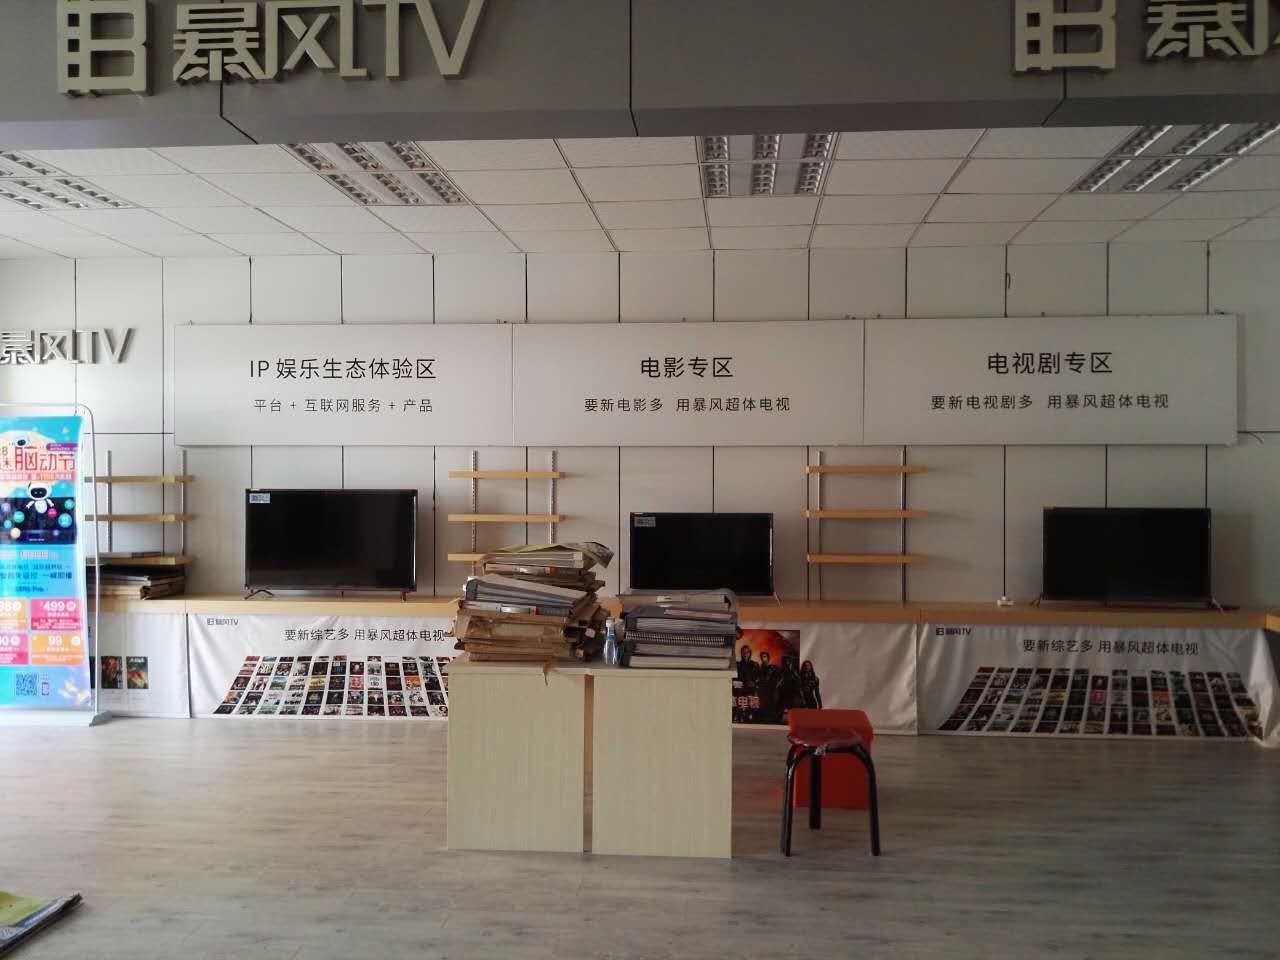 暴风TV哈密旗舰店